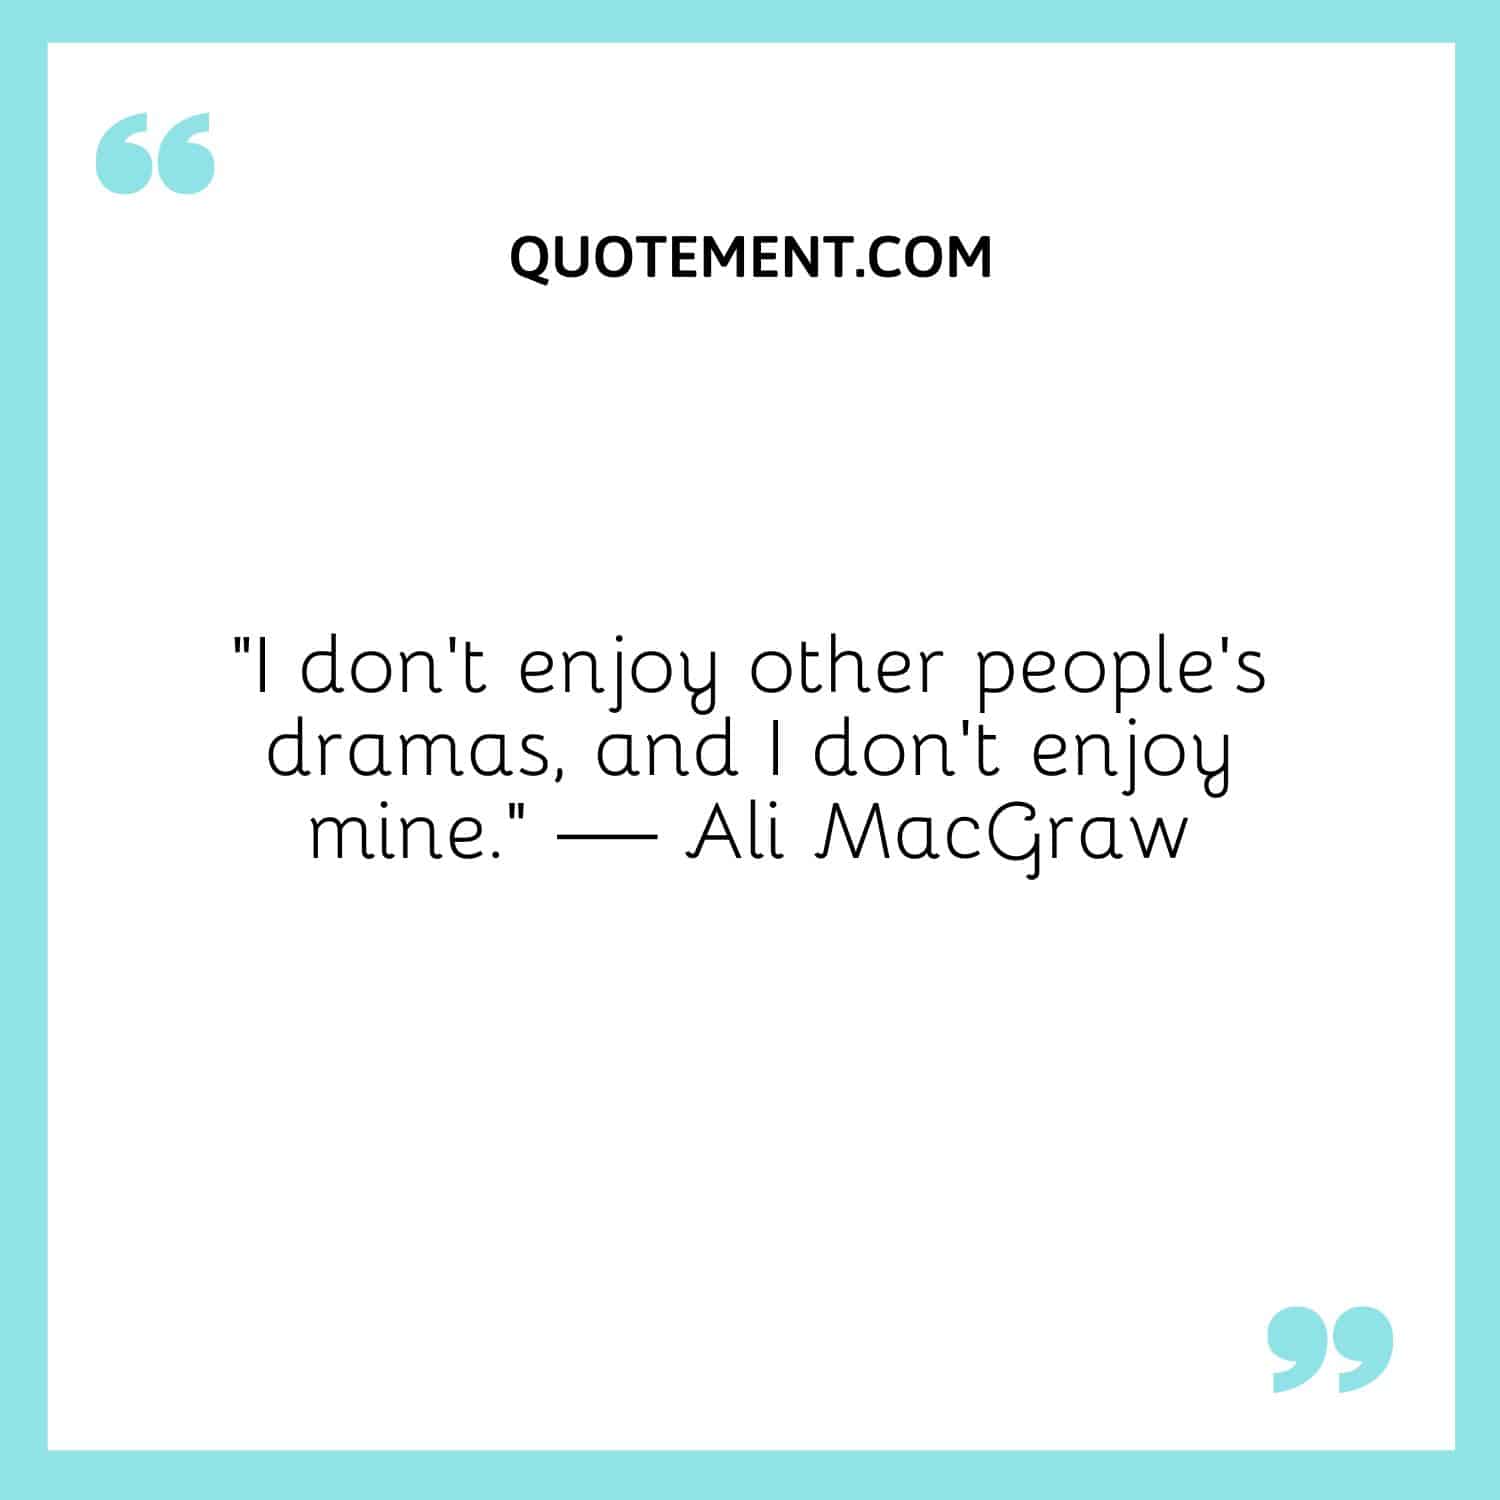 I don't enjoy other people's dramas, and I don't enjoy mine